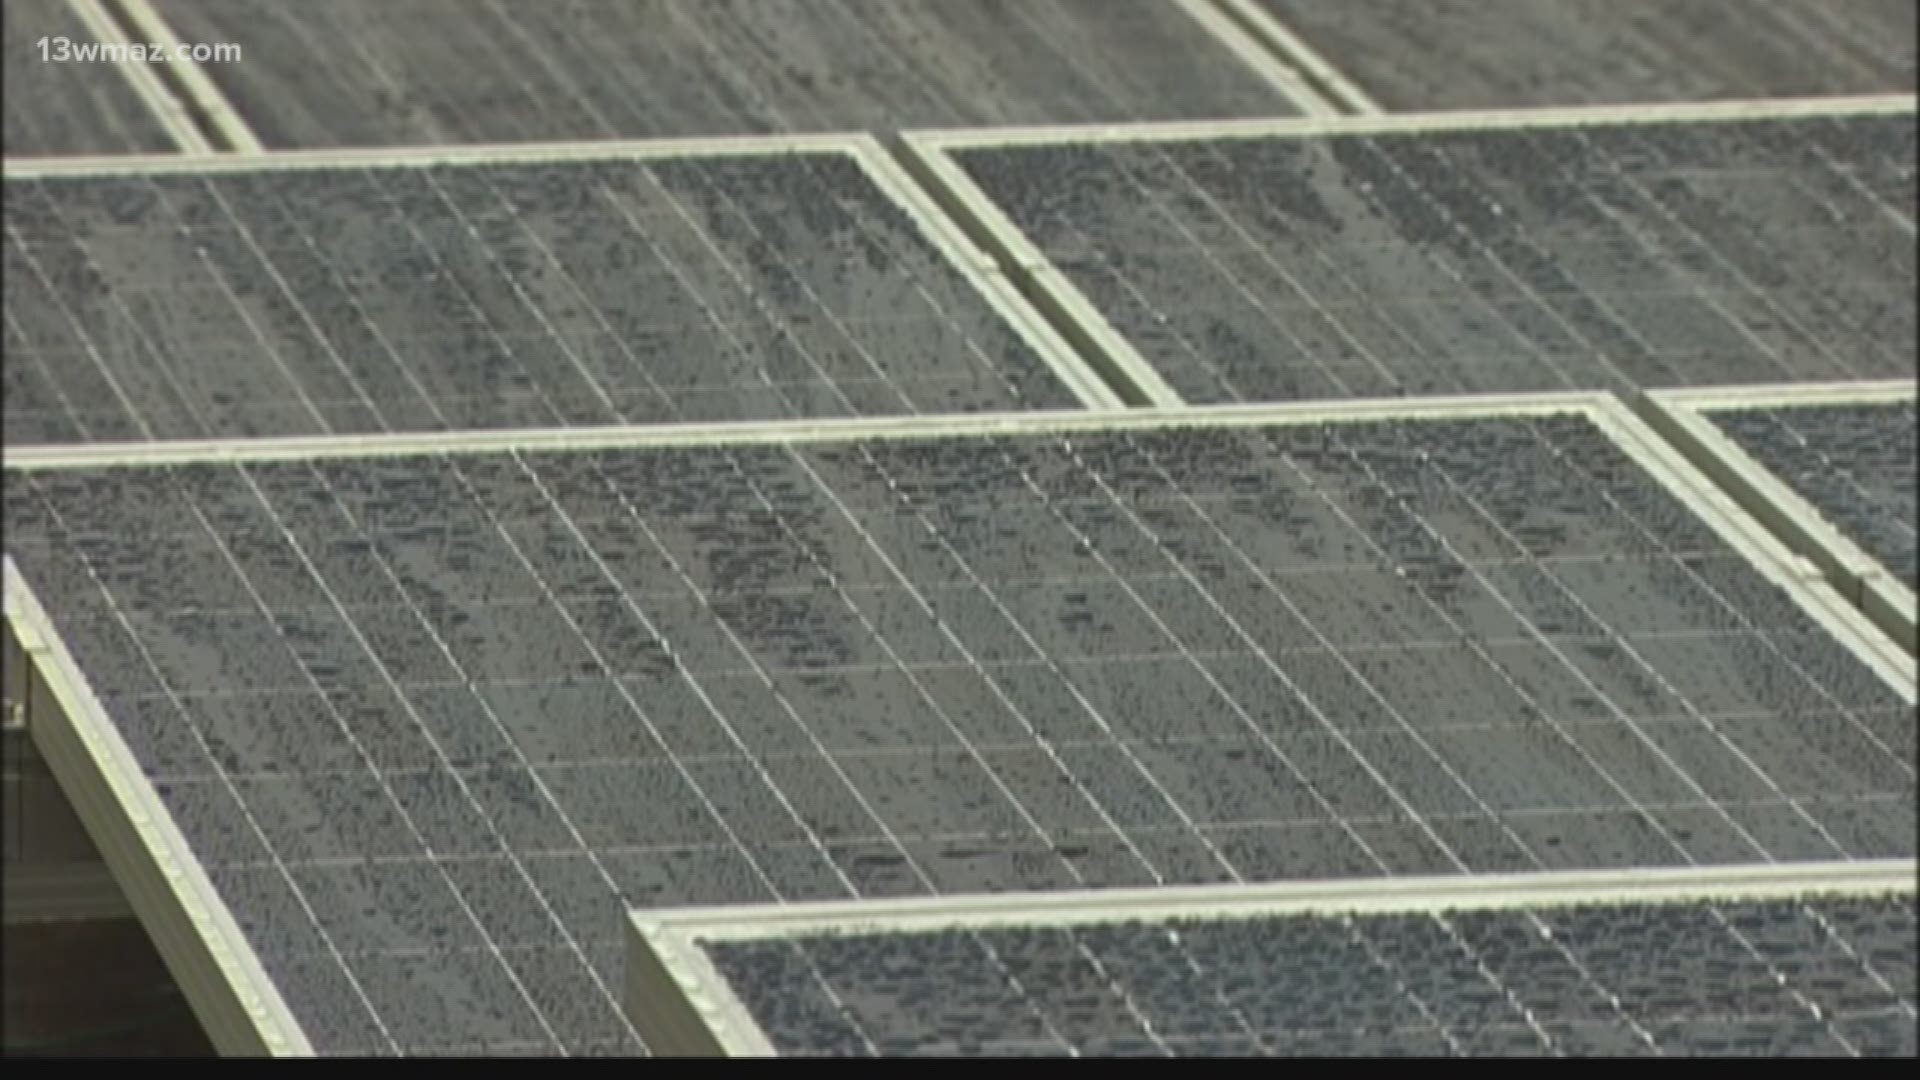 Twiggs County solar plant breaks ground